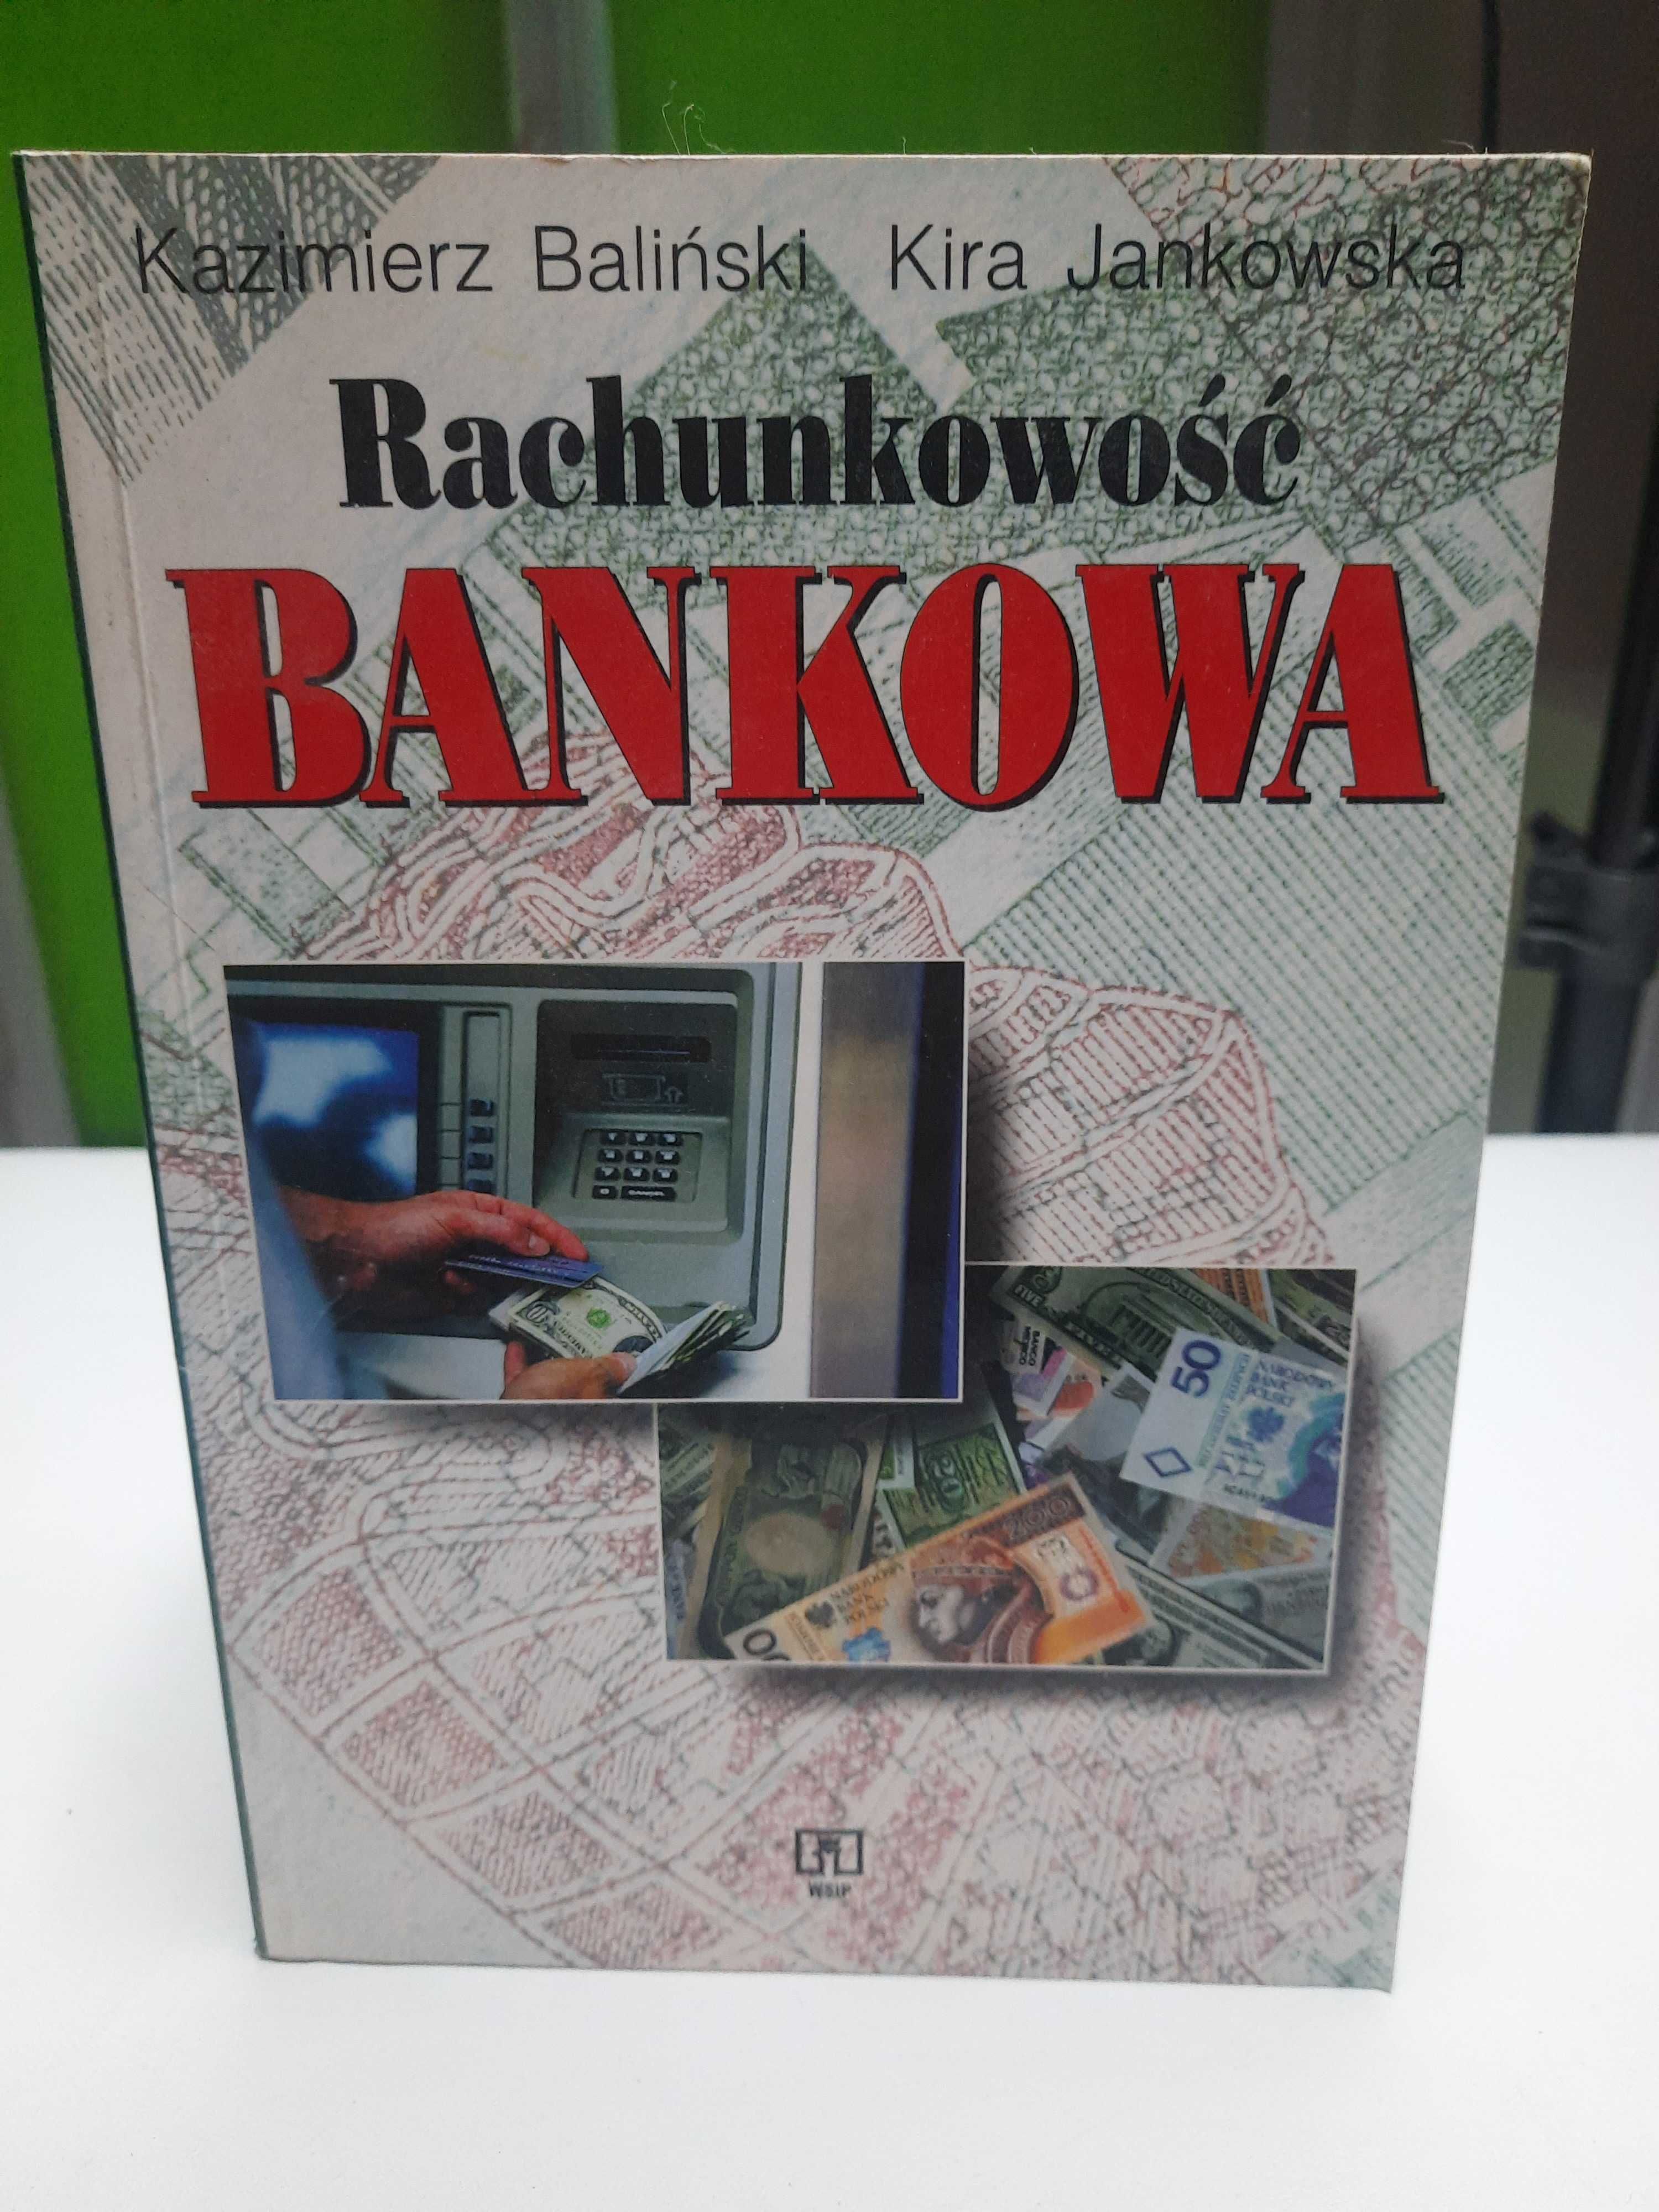 Kazimierz Baliński, Kira Jankowska "Rachunkowość Bankowa"